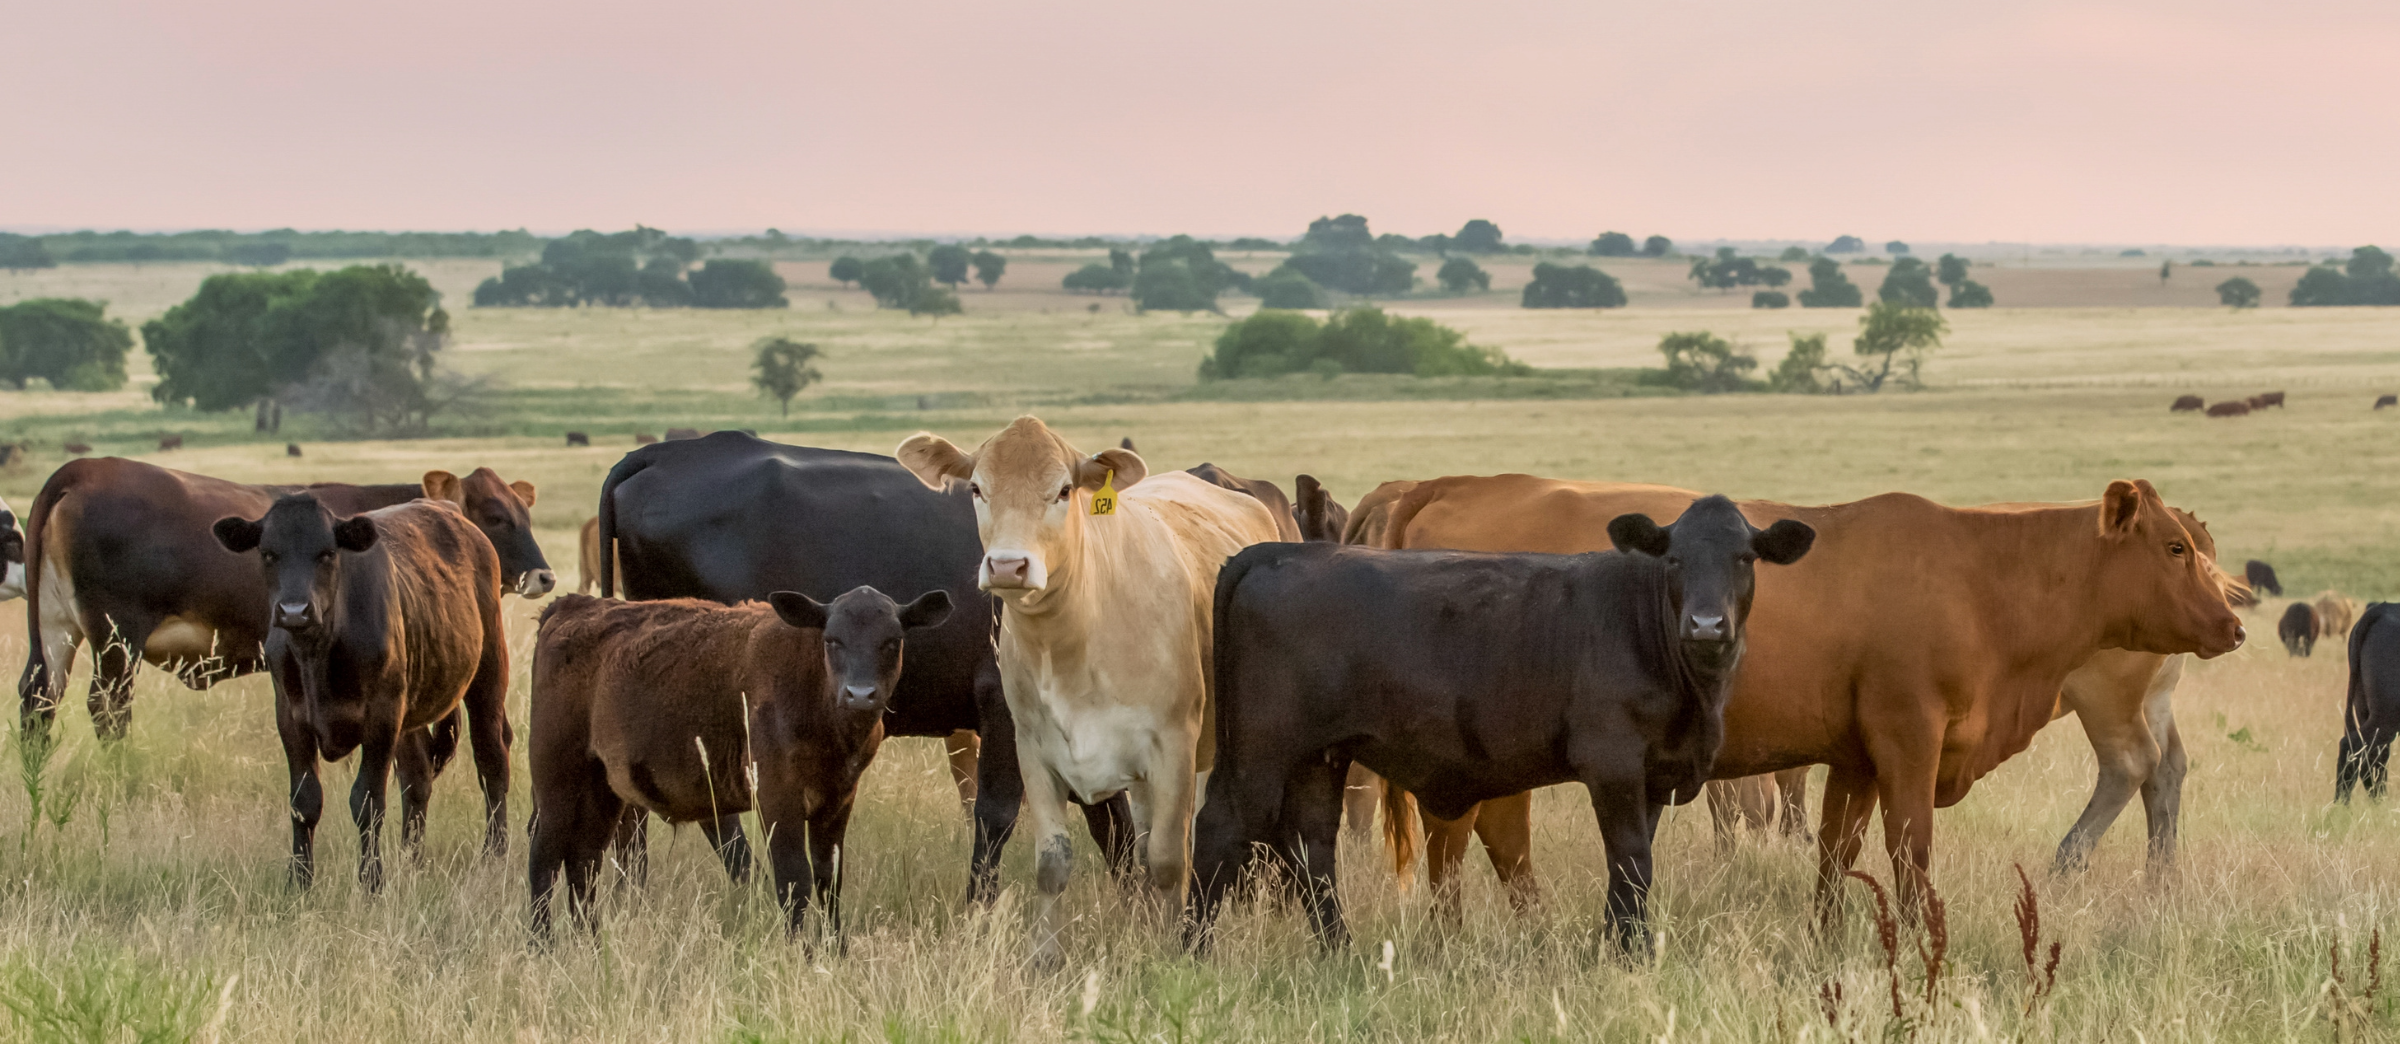 Herd of cattle in field